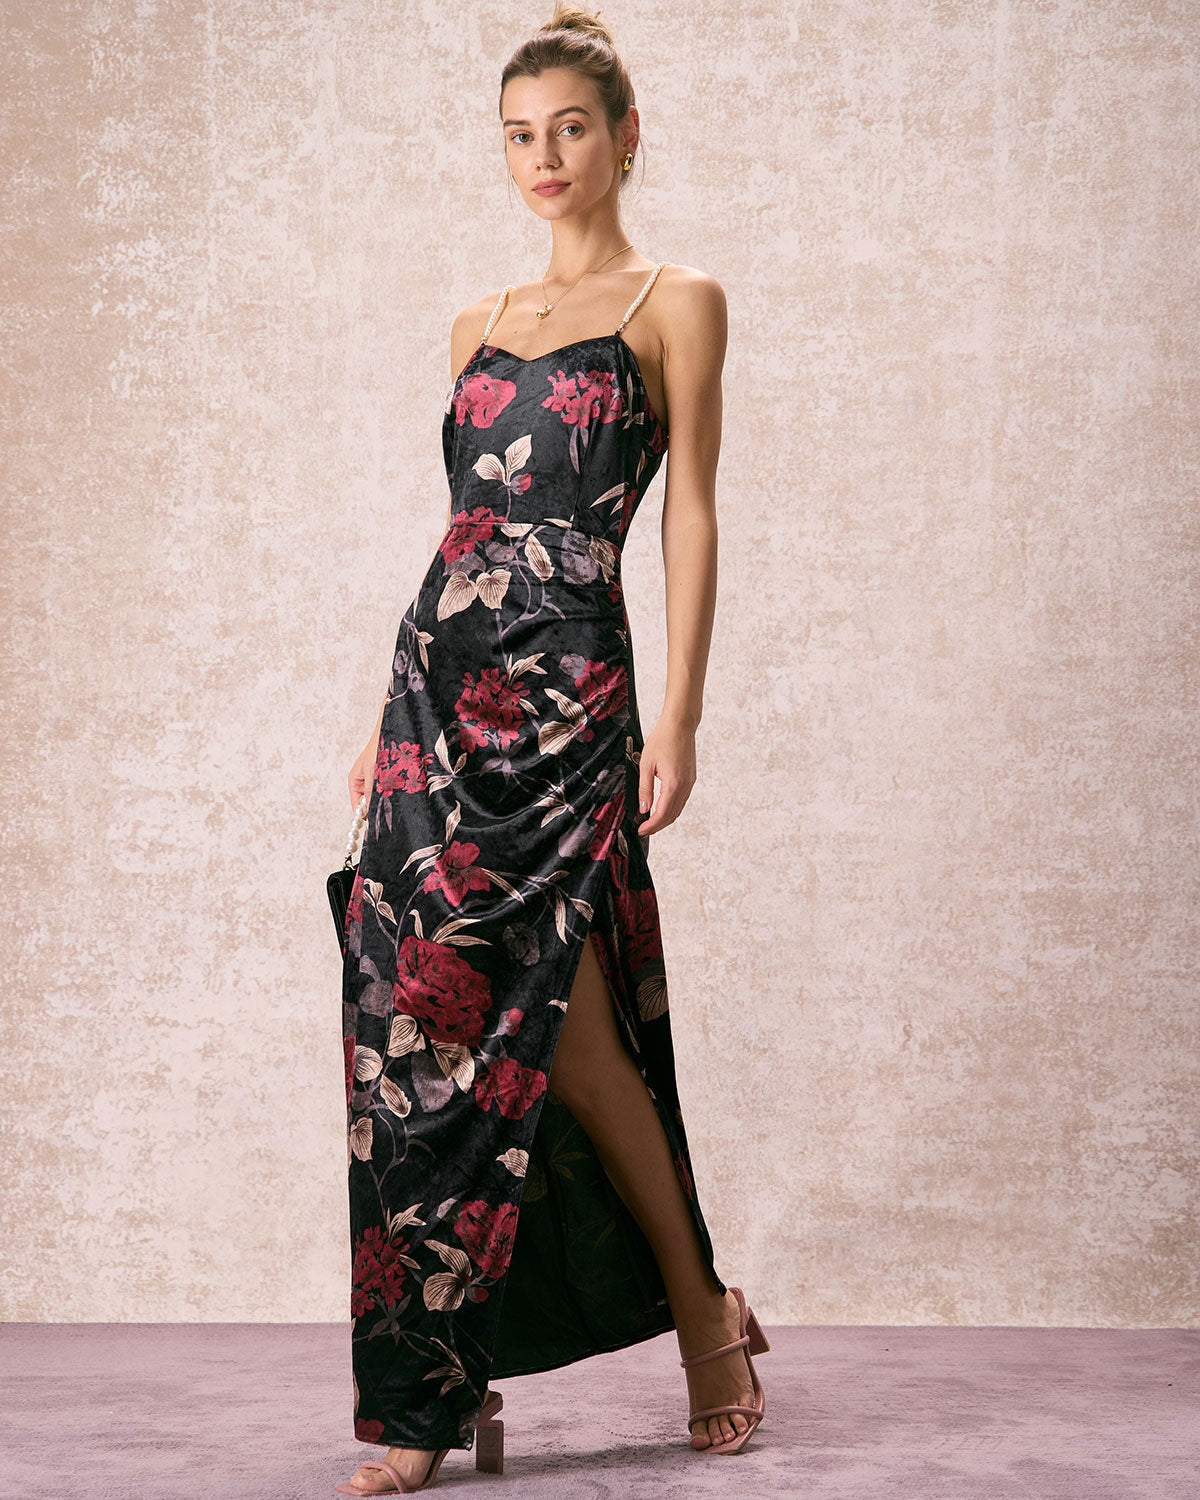 The Black Floral Pearl Slip Velvet Maxi Dress